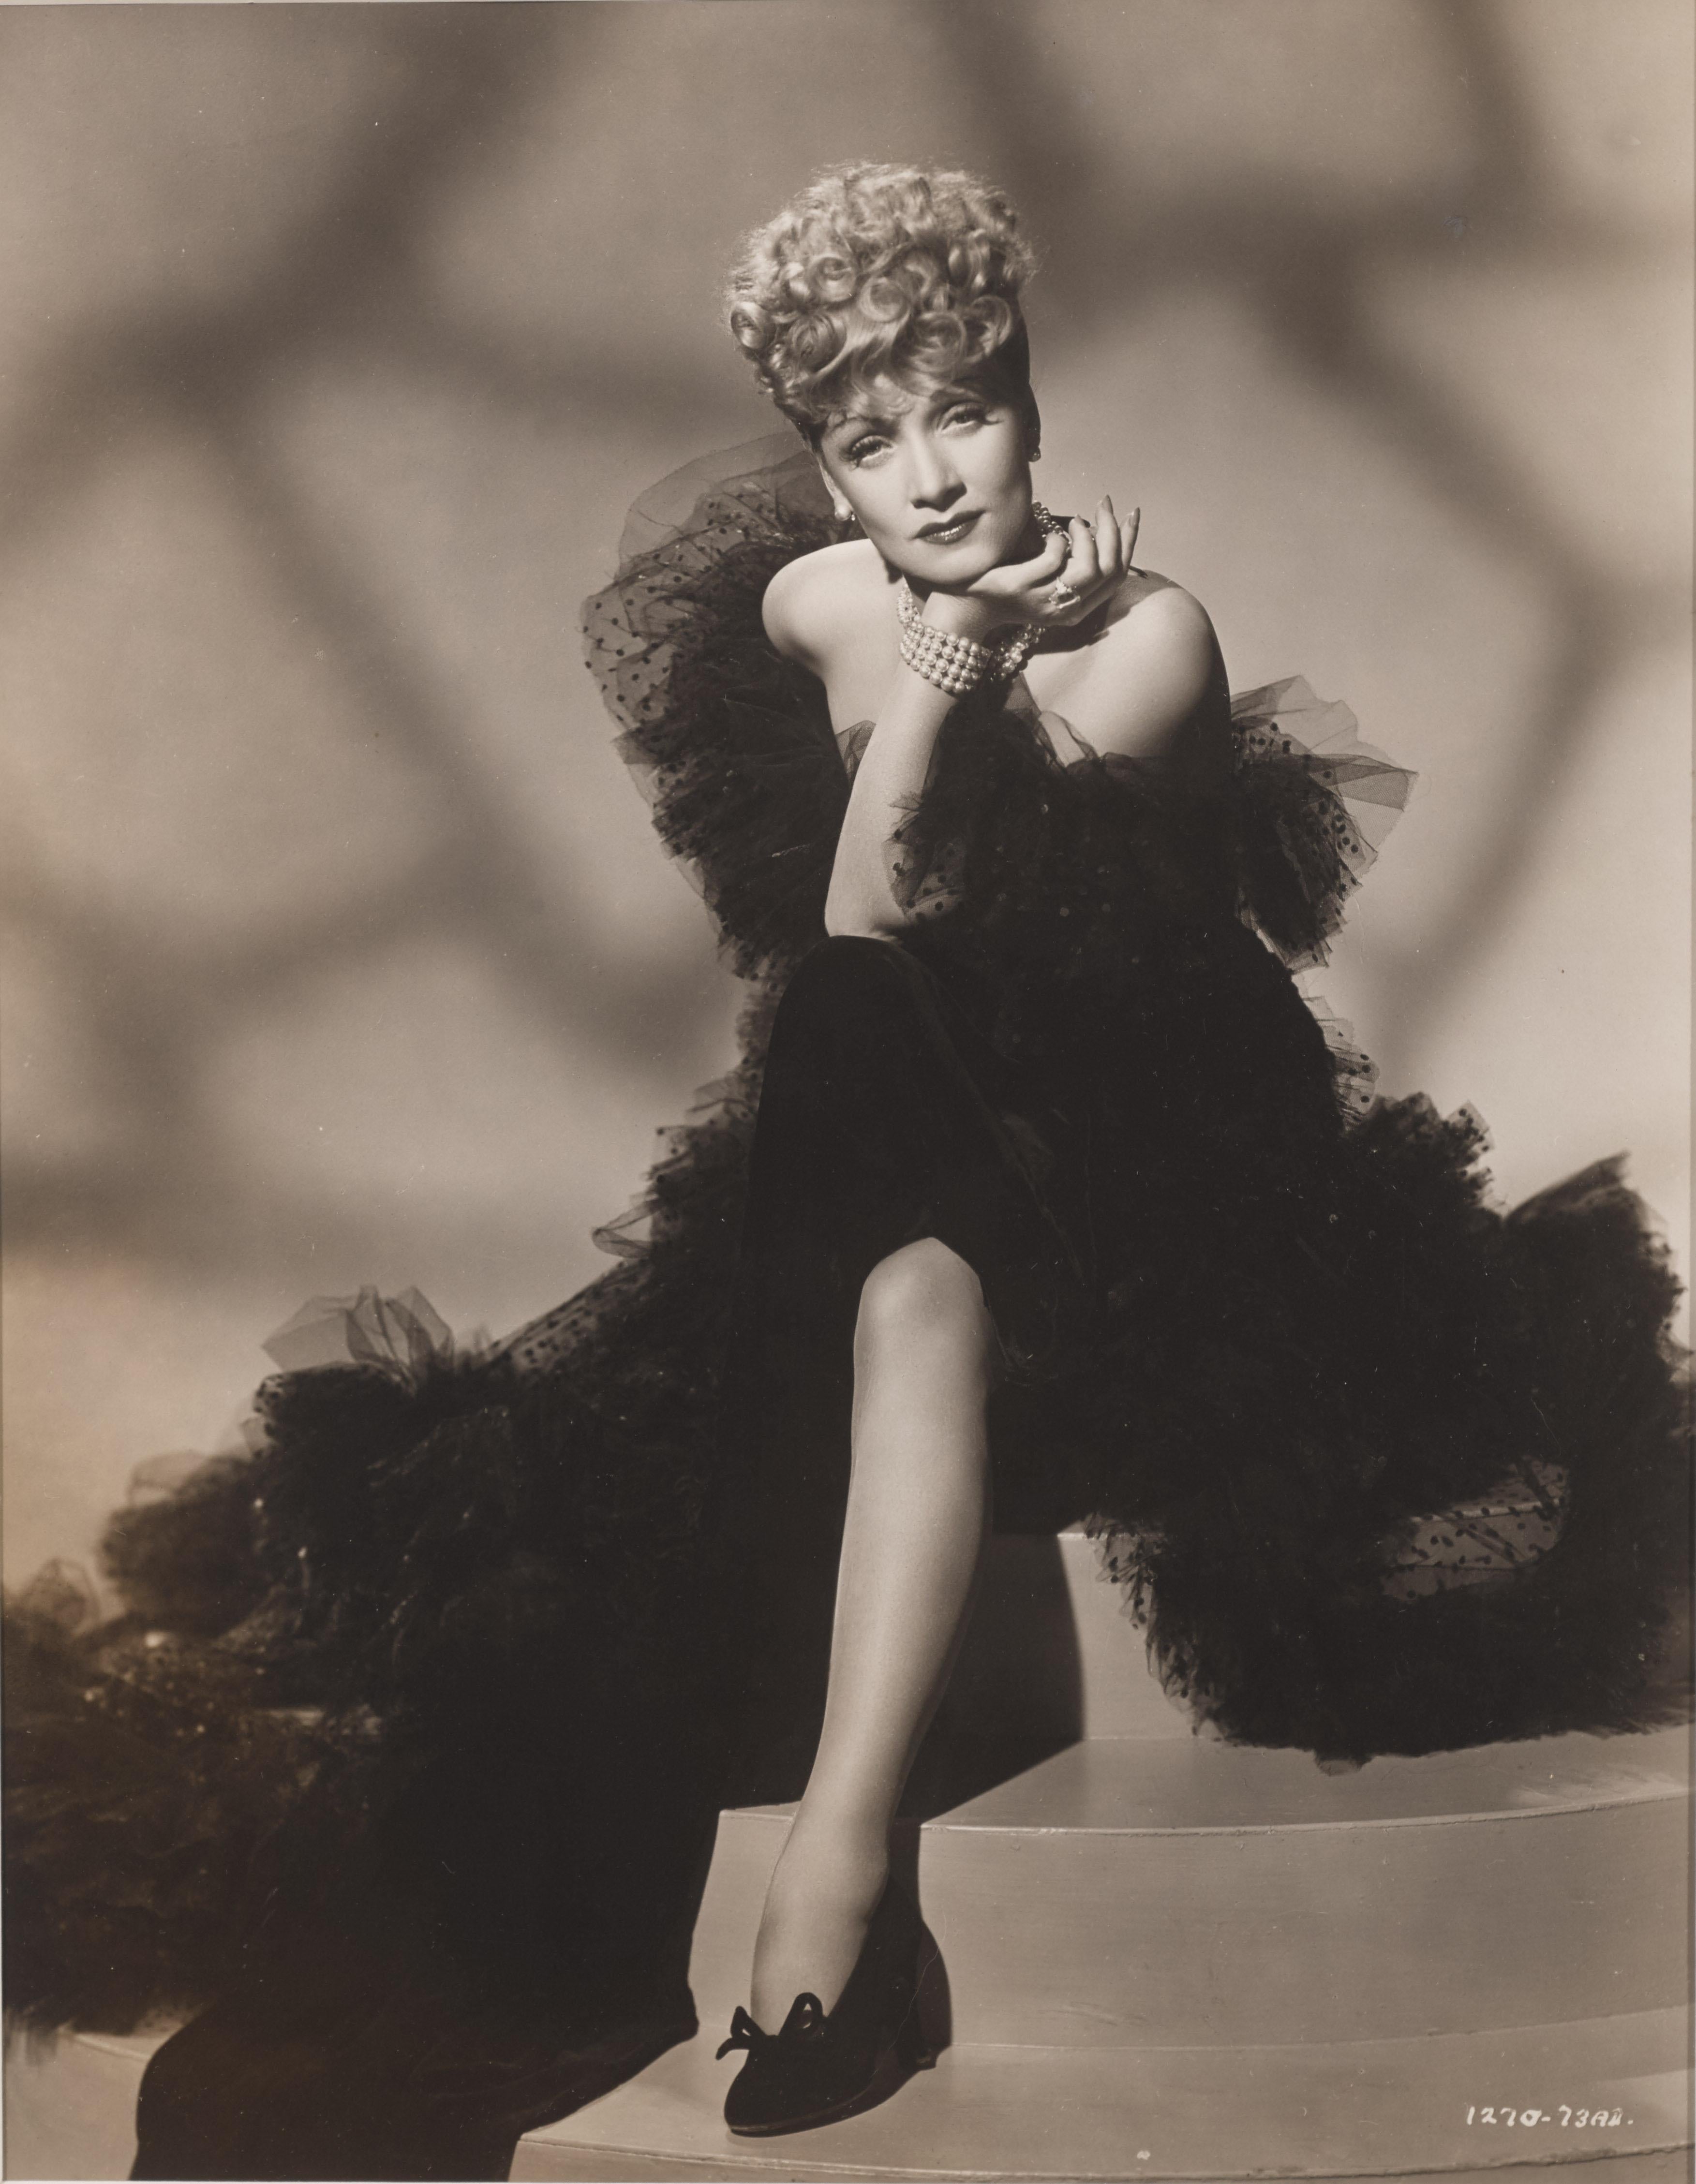 Original US-amerikanisches Studio-Porträtfoto von Marlene Dietrich im Überformat.
Dieses Stück ist konservatorisch gerahmt in einem Obeche-Holzrahmen mit Passepartouts und UV-Plexiglas
Die angegebene Größe ist vor der Rahmung.
Dieses Stück würde